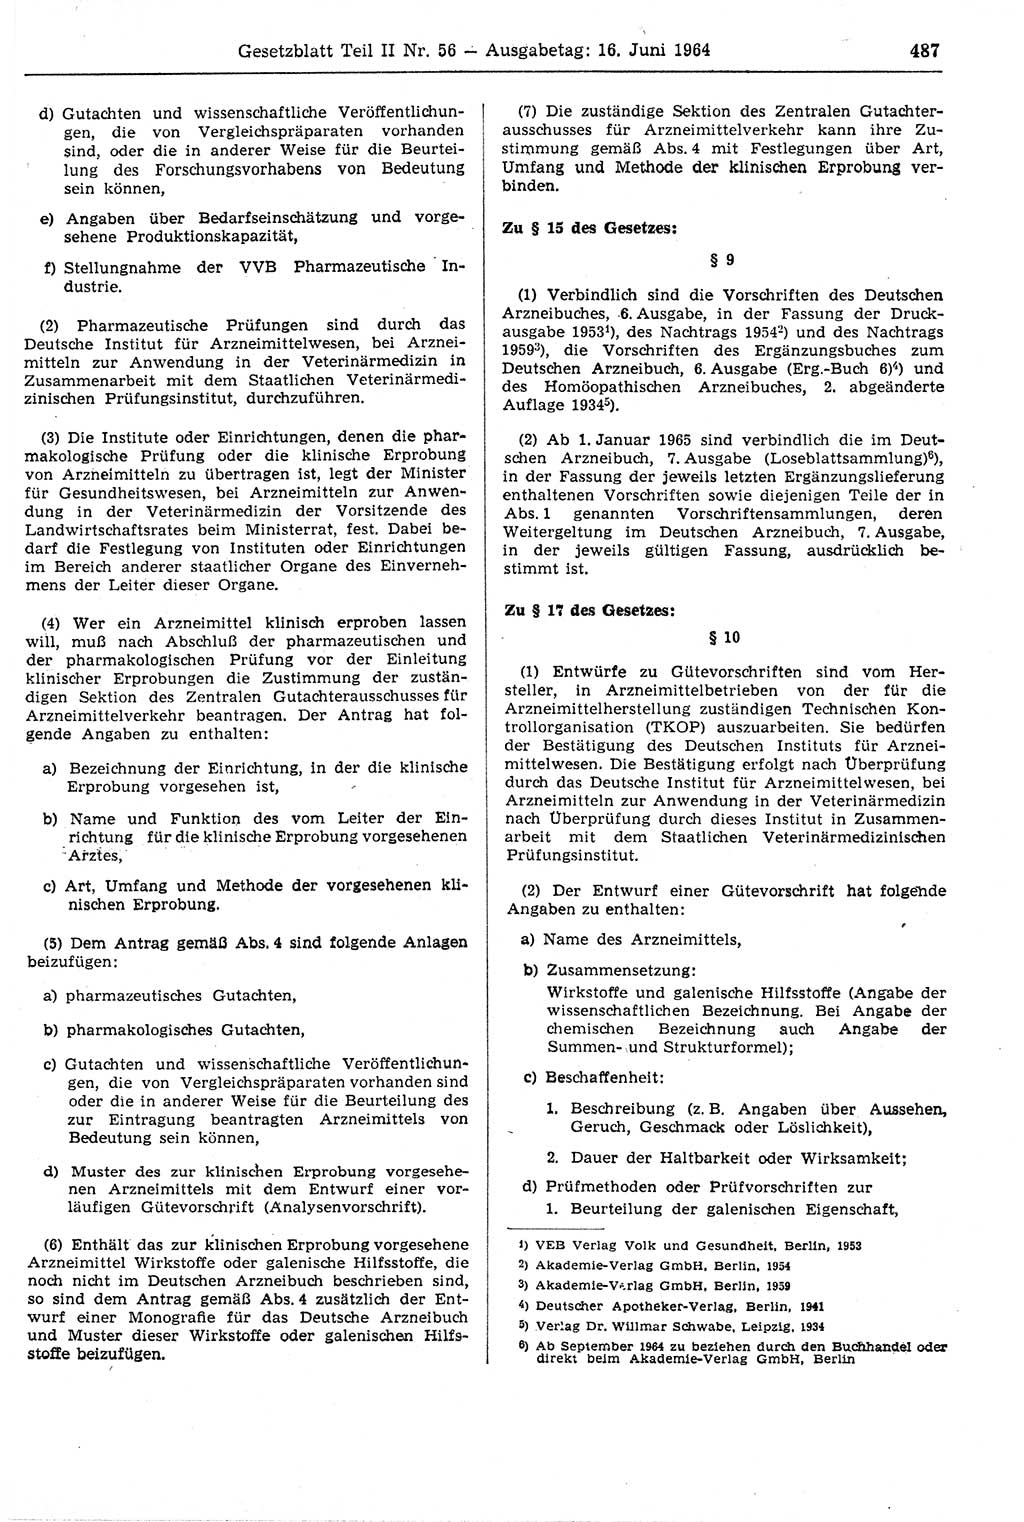 Gesetzblatt (GBl.) der Deutschen Demokratischen Republik (DDR) Teil ⅠⅠ 1964, Seite 487 (GBl. DDR ⅠⅠ 1964, S. 487)